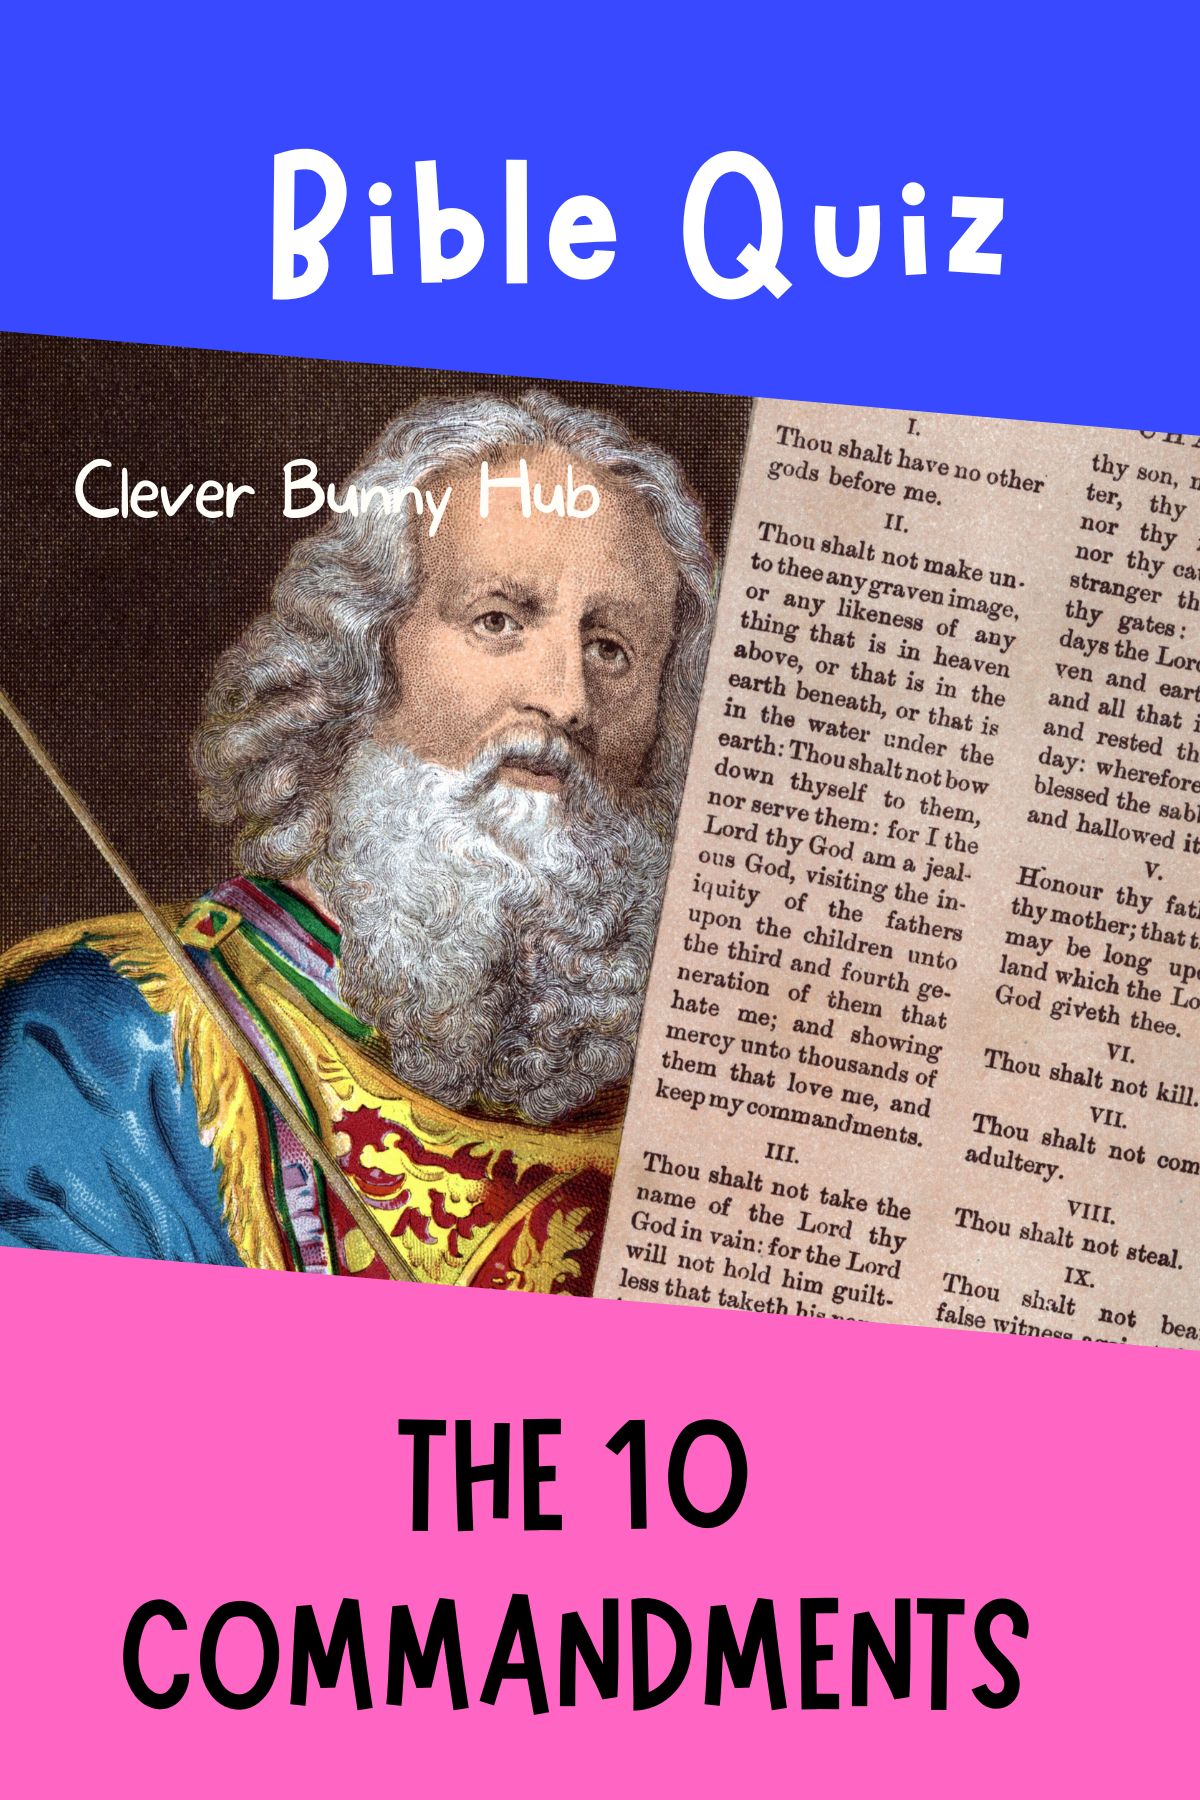 Bible Quiz About The 10 Commandments